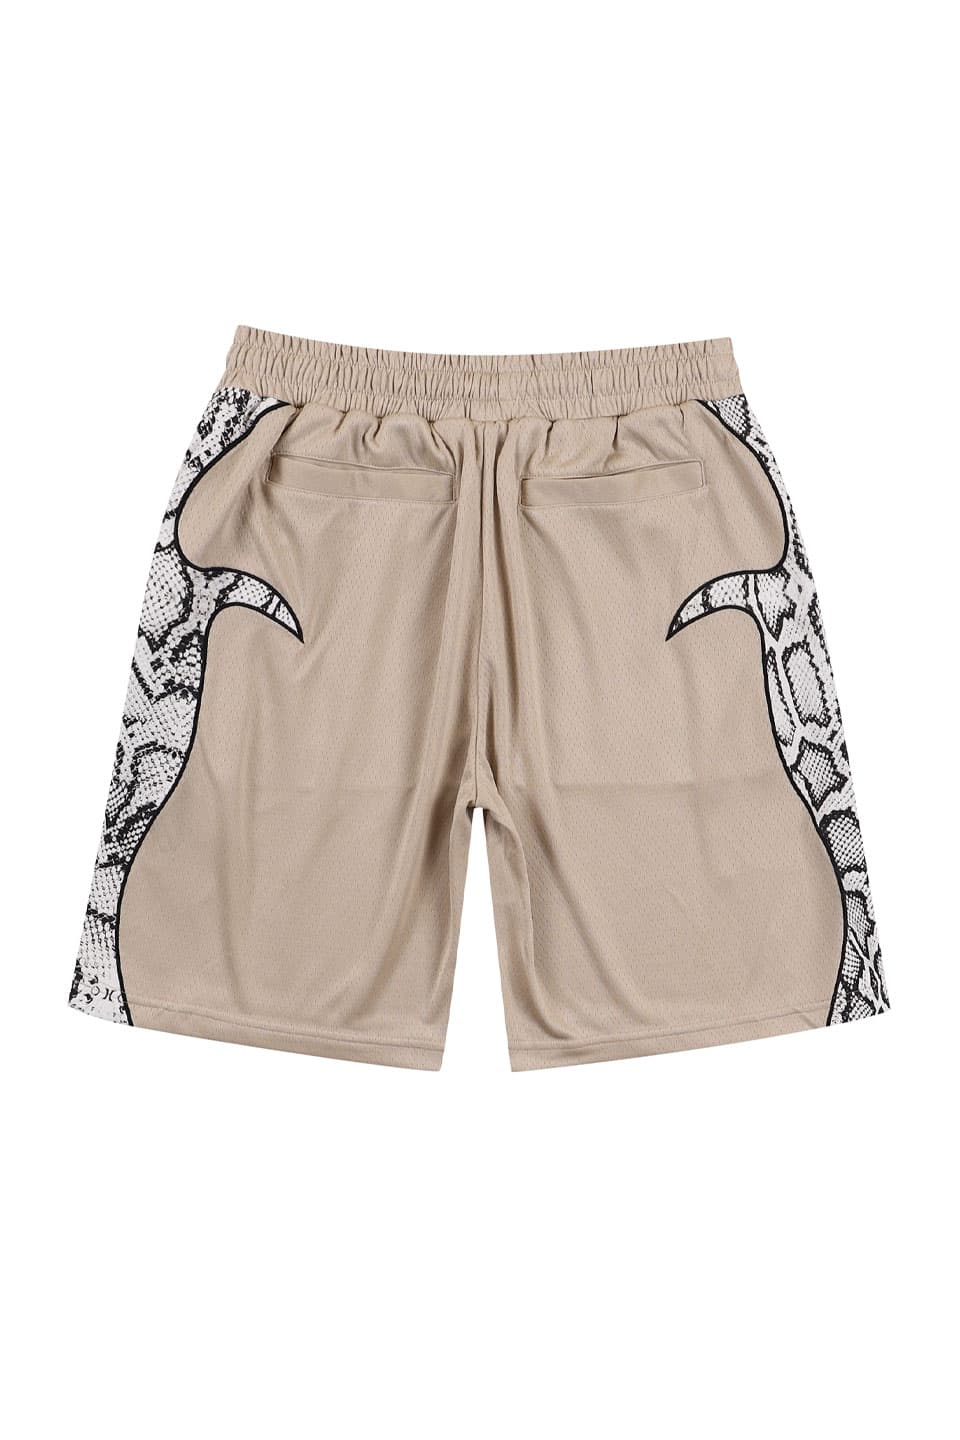 Razer Shorts